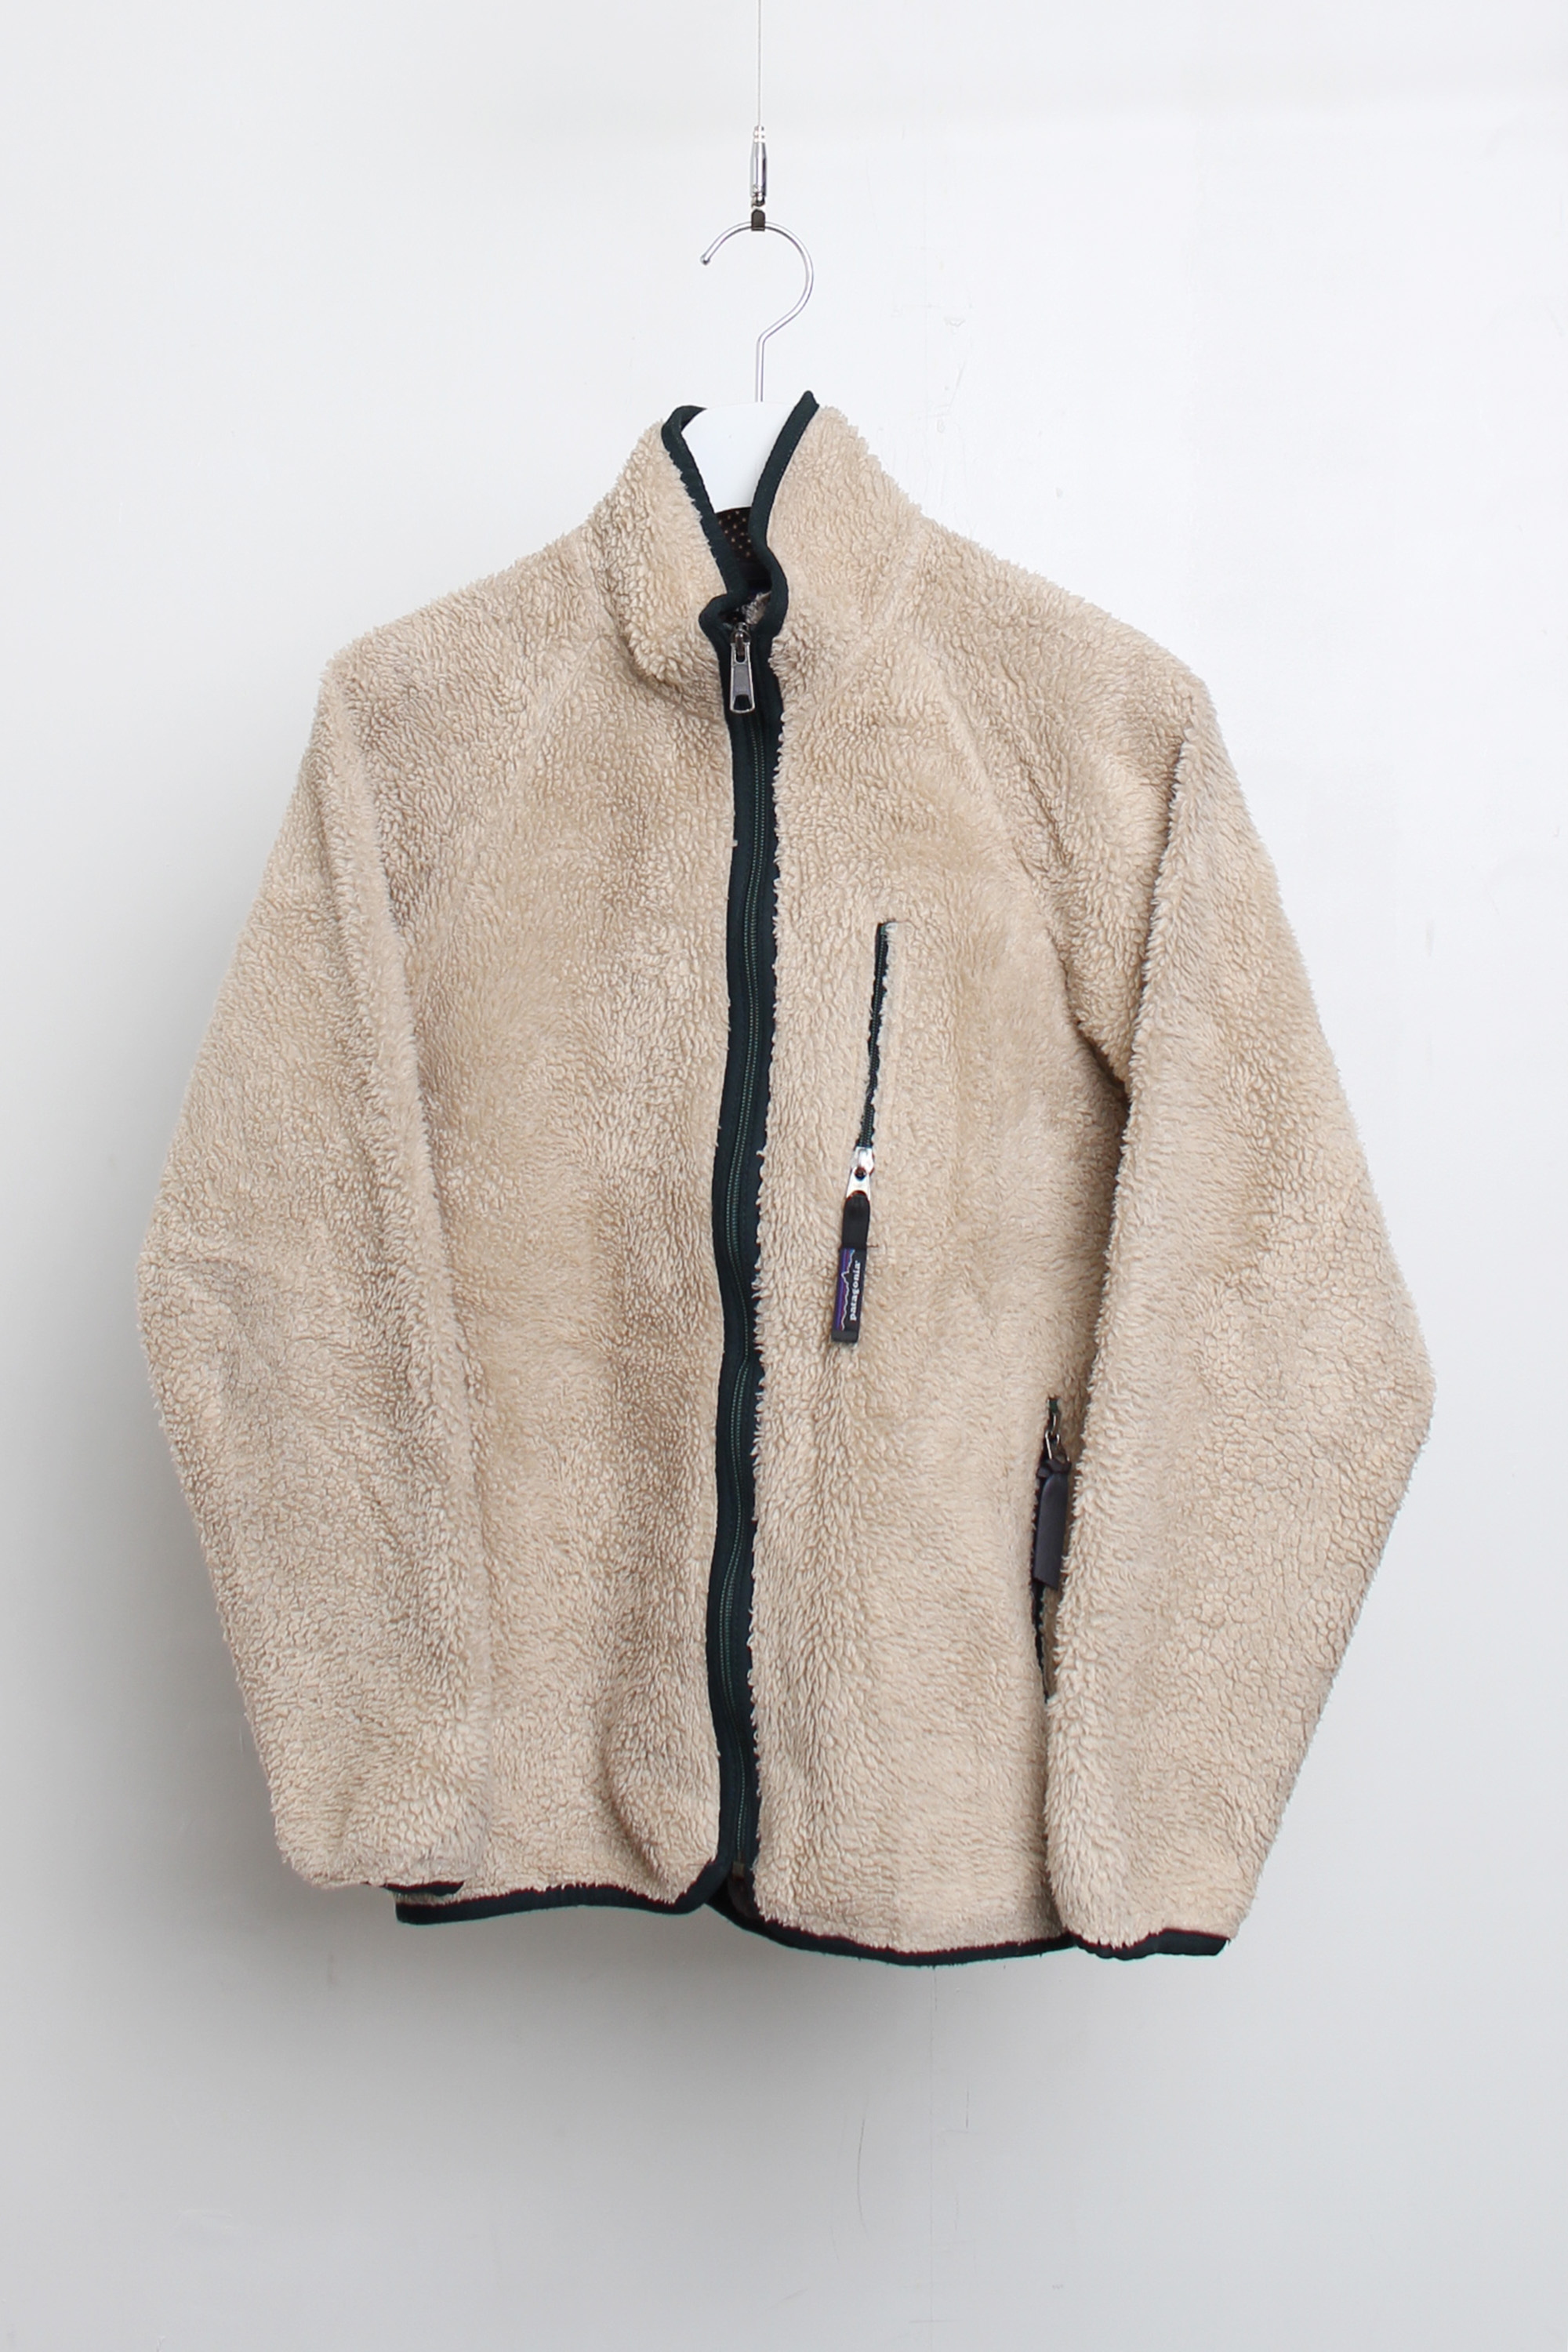 PATAGONIA fleece jacket